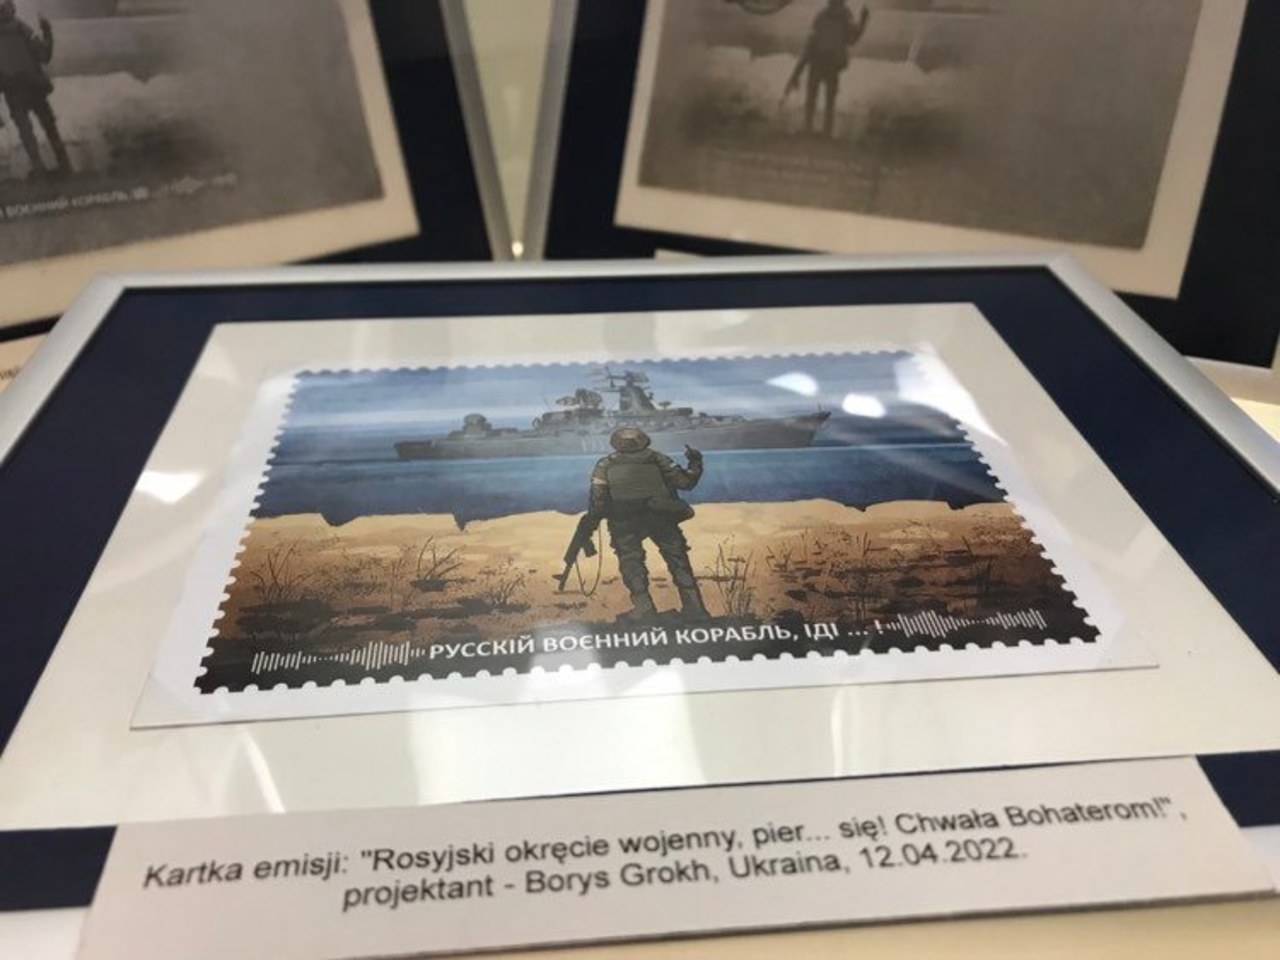  "Ukraińskie znaczki wojny" we wrocławskim Muzeum